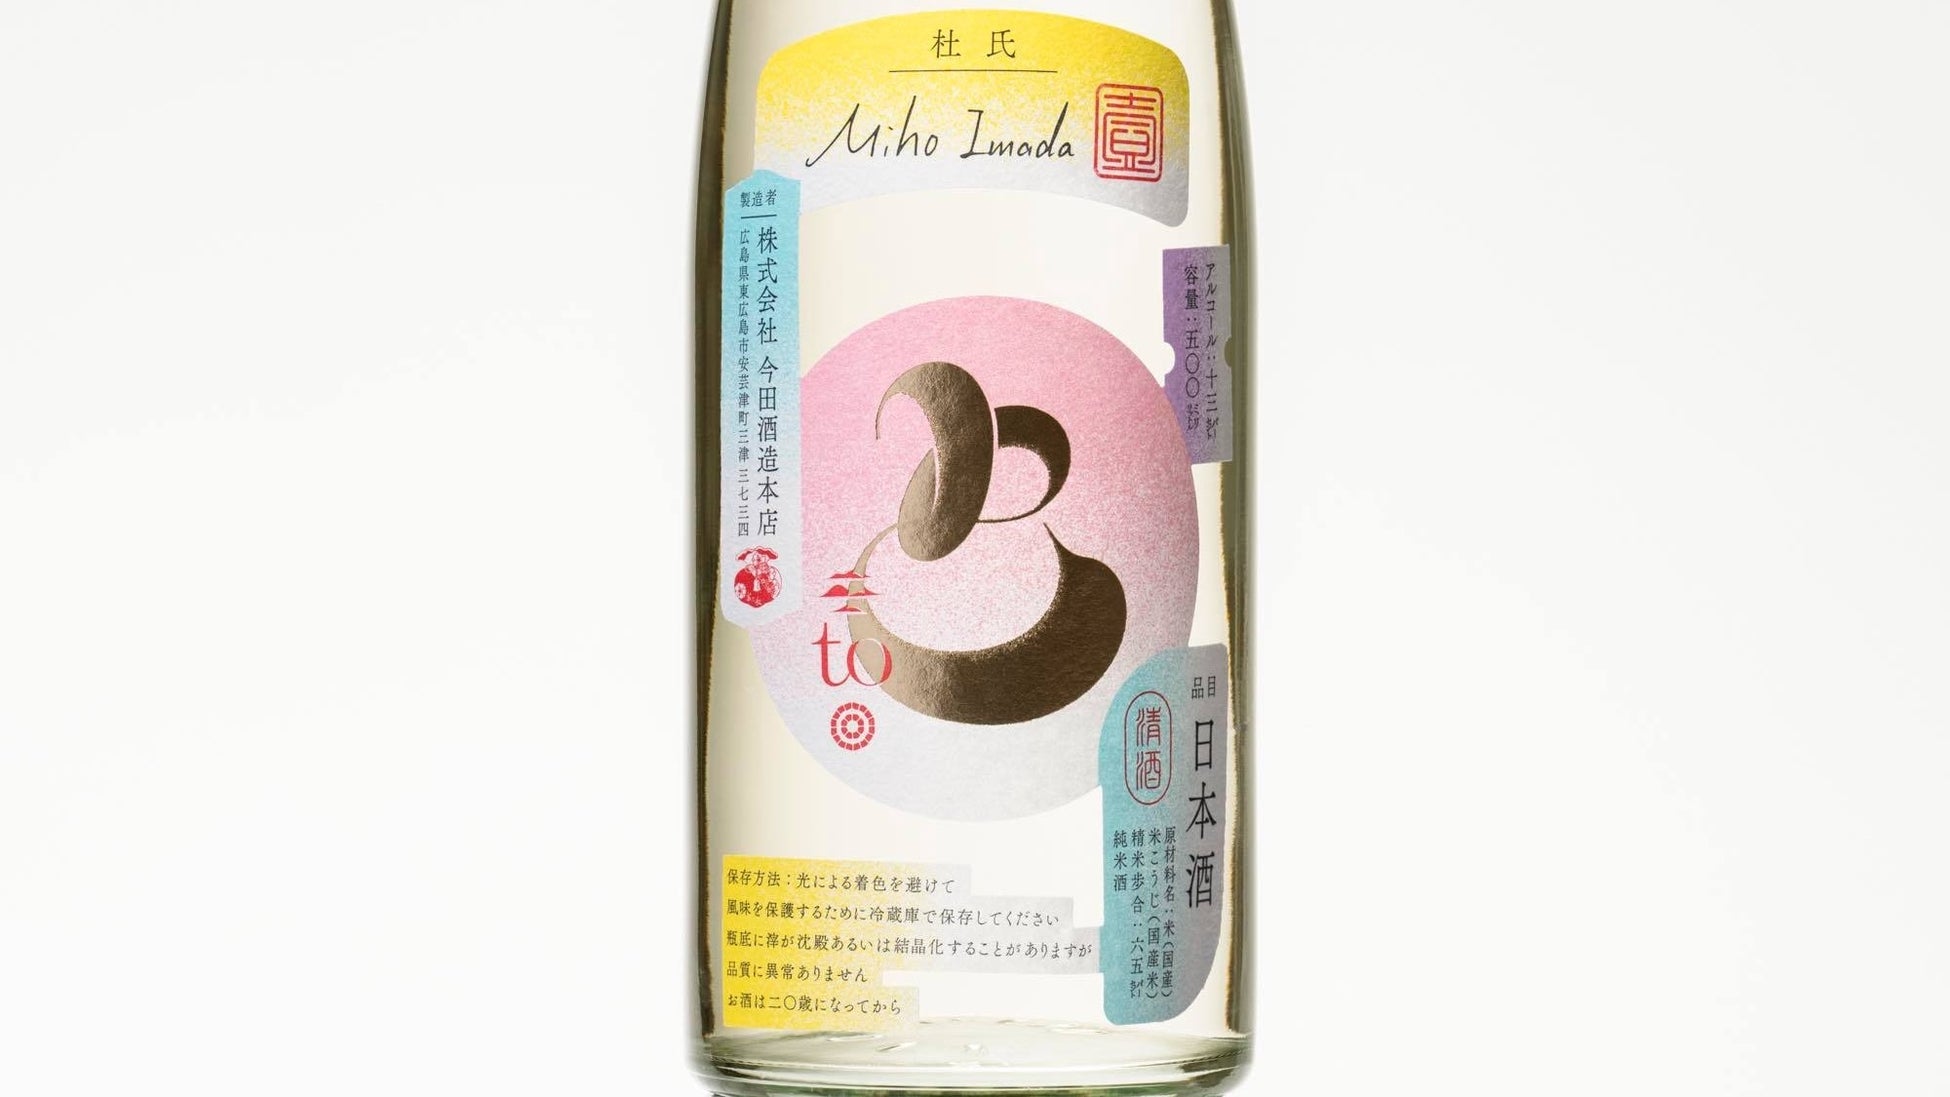 日本最大級のアートフェア「ART FAIR ASIA FUKUOKA2023」にSAKE HUNDREDが協賛。VIPにスパークリング日本酒『深星』を提供